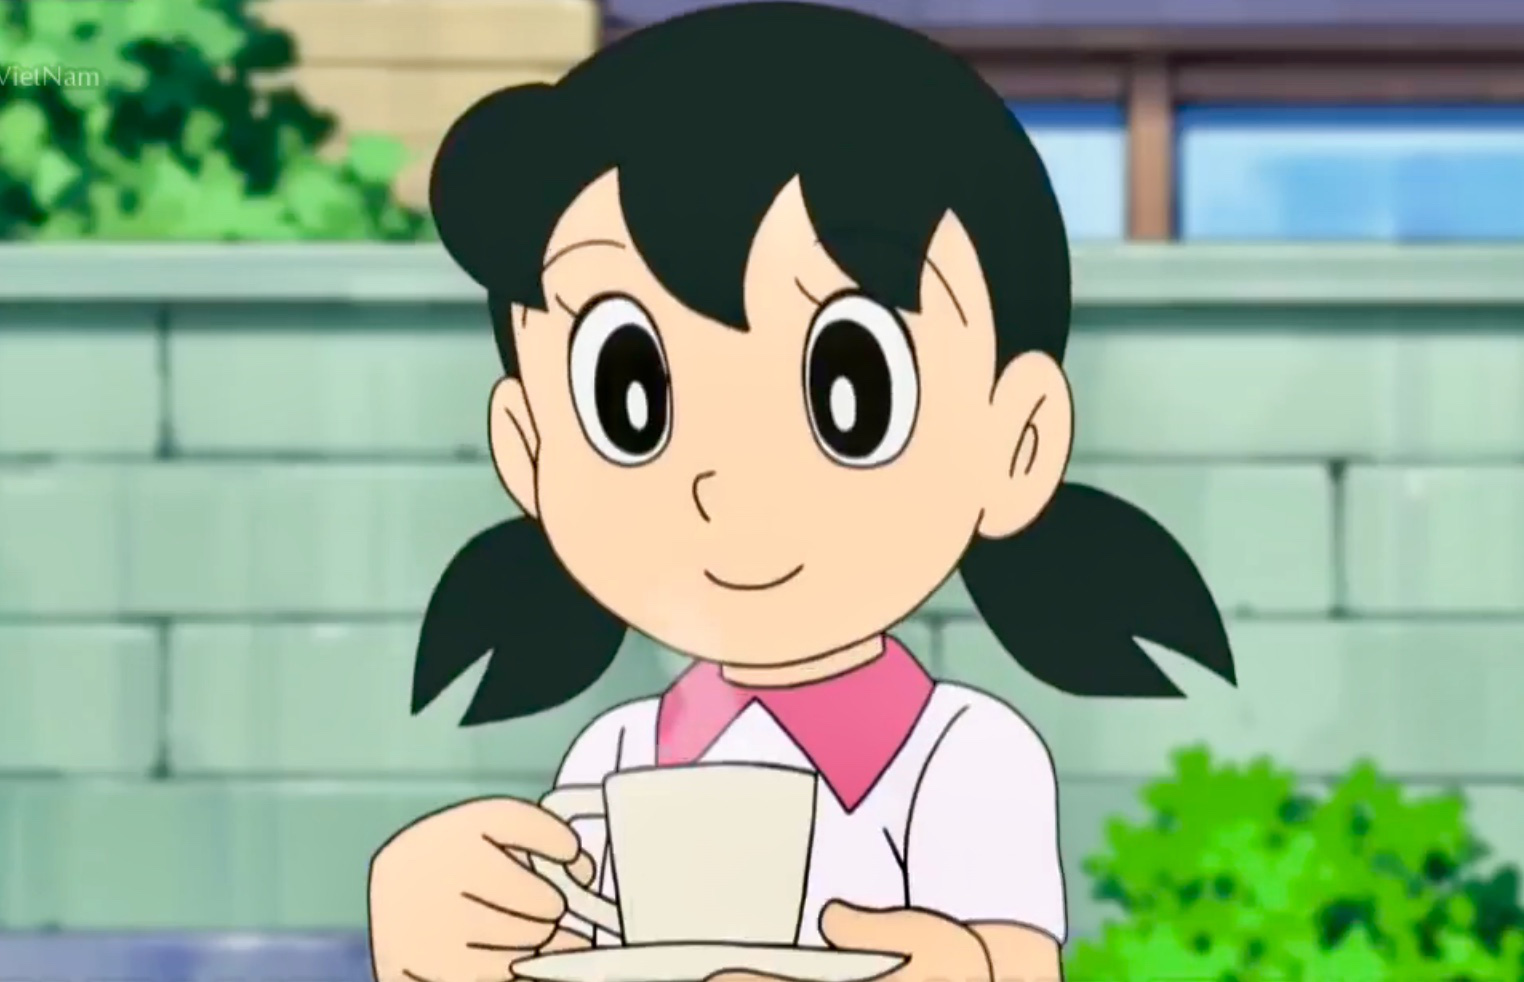 Shizuka, anti-fan: Shizuka là một trong những nhân vật được yêu thích trong loạt phim hoạt hình Doraemon. Nhưng bạn có biết rằng Shizuka cũng có những anti-fan của riêng mình? Hãy xem hình ảnh để tìm hiểu thêm về cô gái dễ thương này và vì sao lại có những người không thích cô ấy.